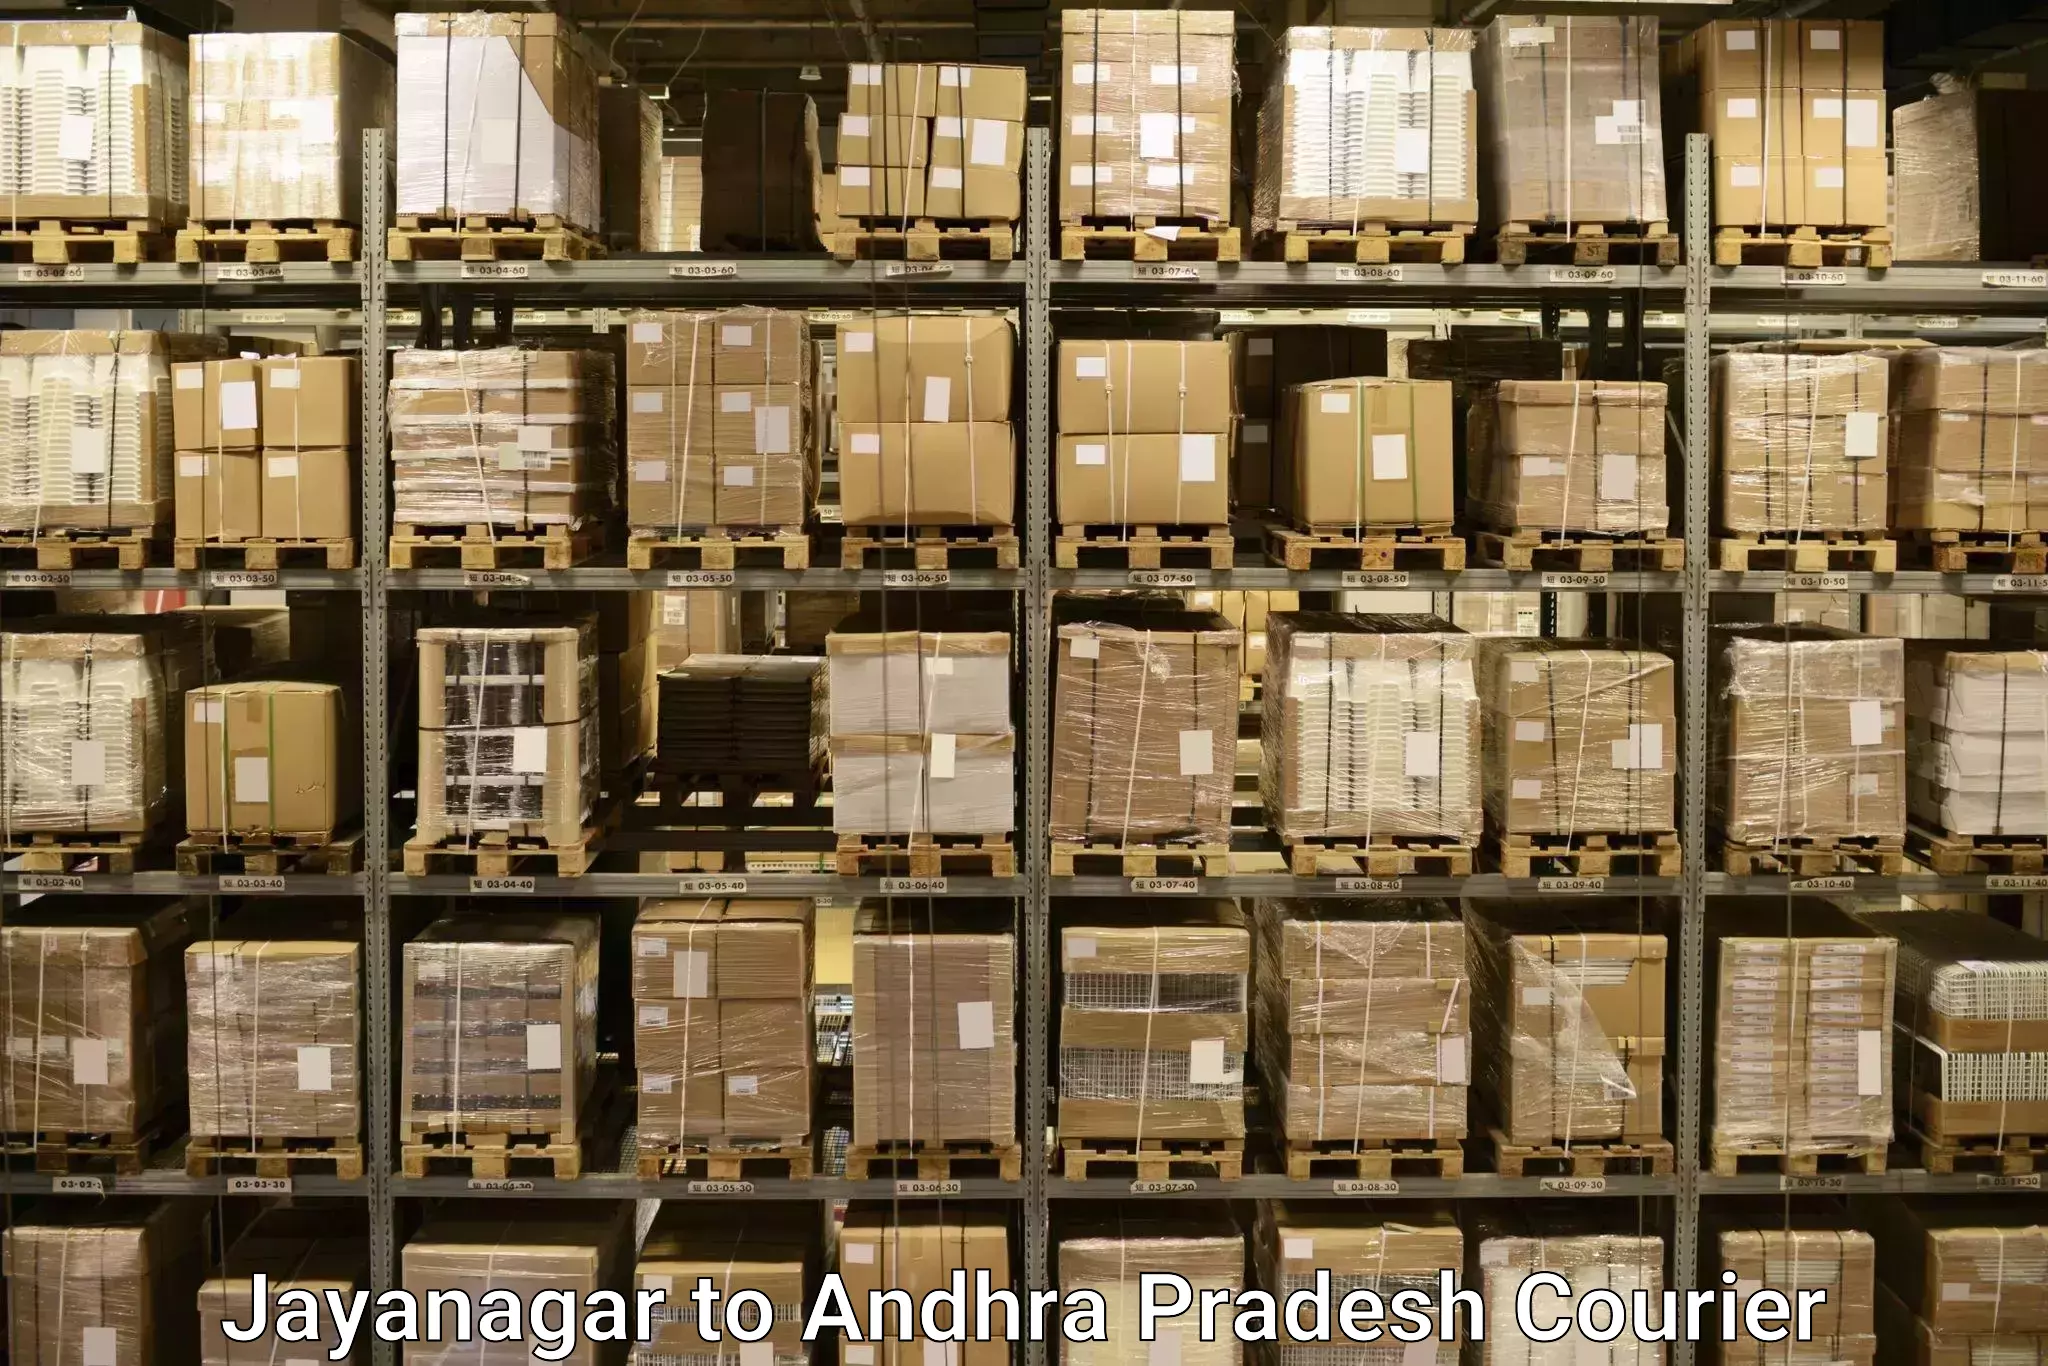 Baggage courier service Jayanagar to IIIT Chittoor